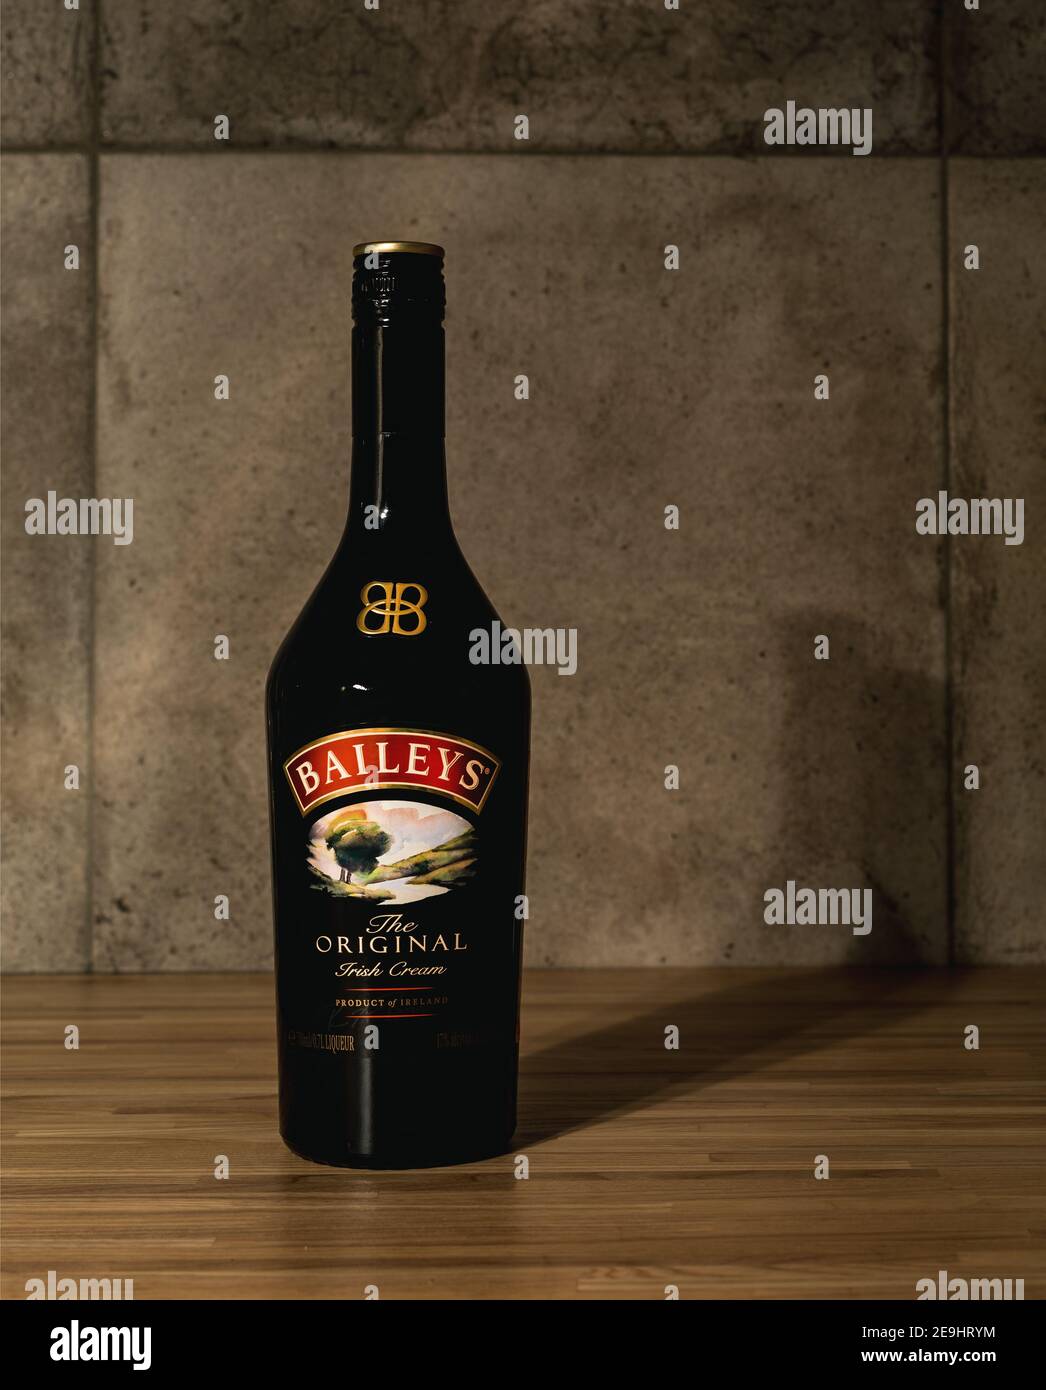 Baileys liquor bottle standing in bar Stock Photo